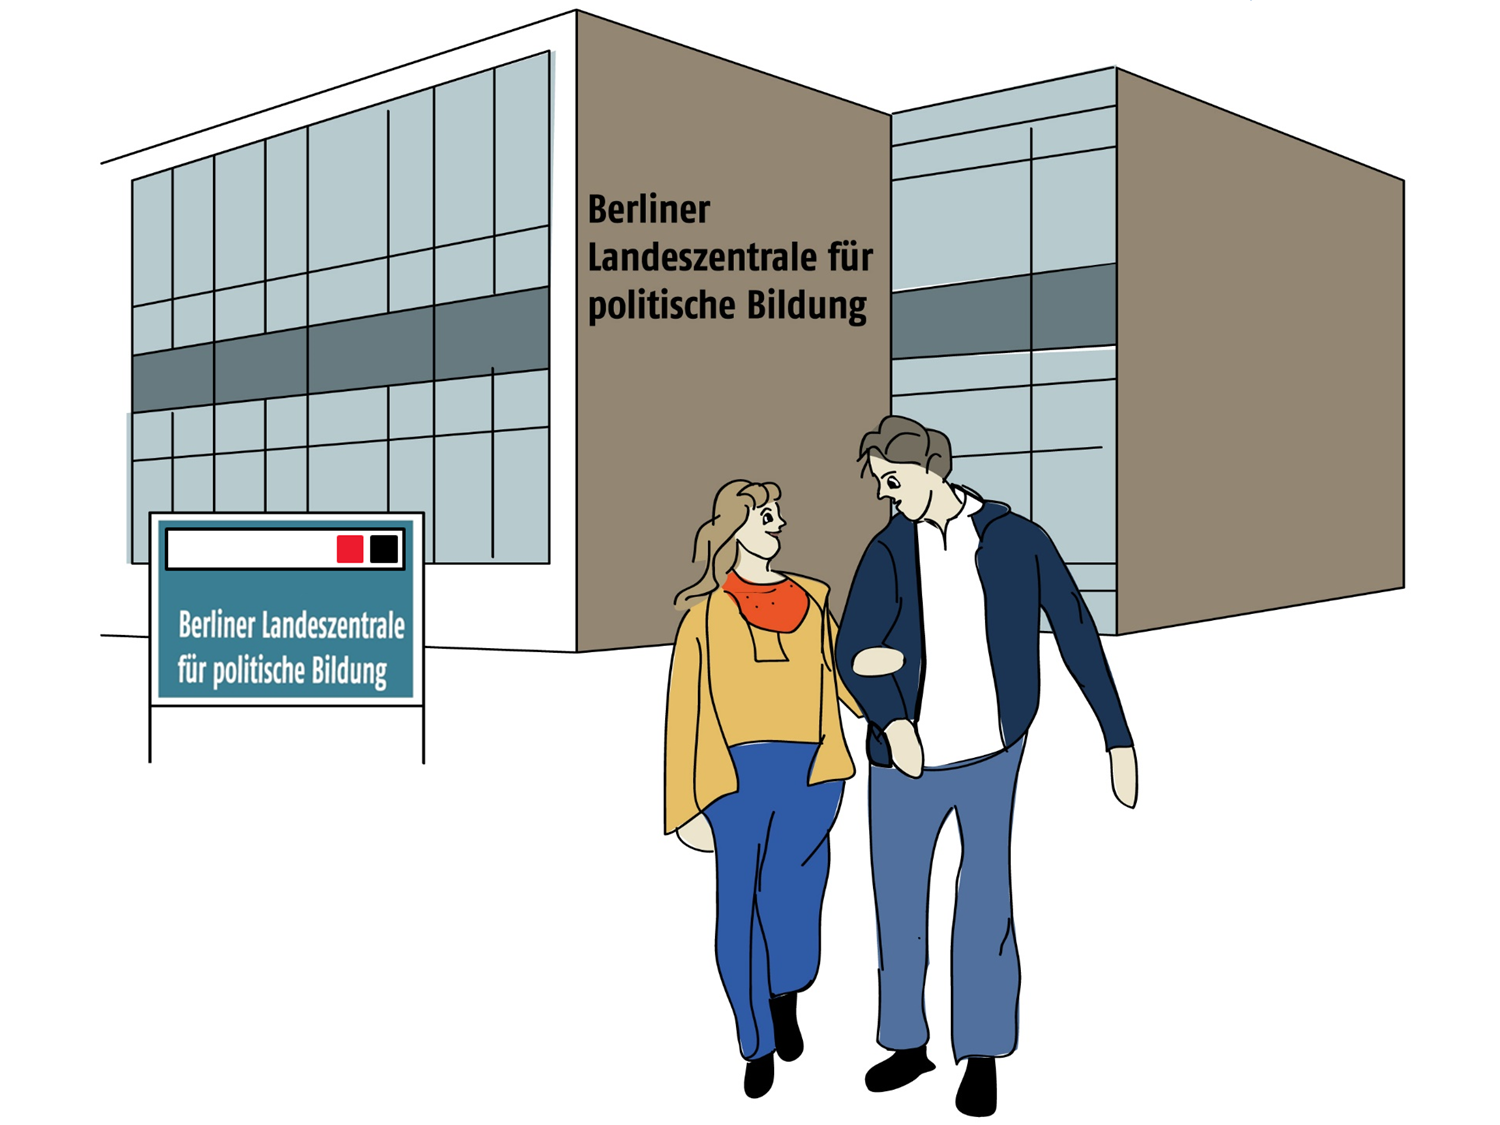 Frau und Mann verlassen ein Haus mit der Aufschrift "Berliner Landeszentrale für politische Bildung" während sie sich angeregt unterhalten | Daneben das Symbol des Alpha-Siegels